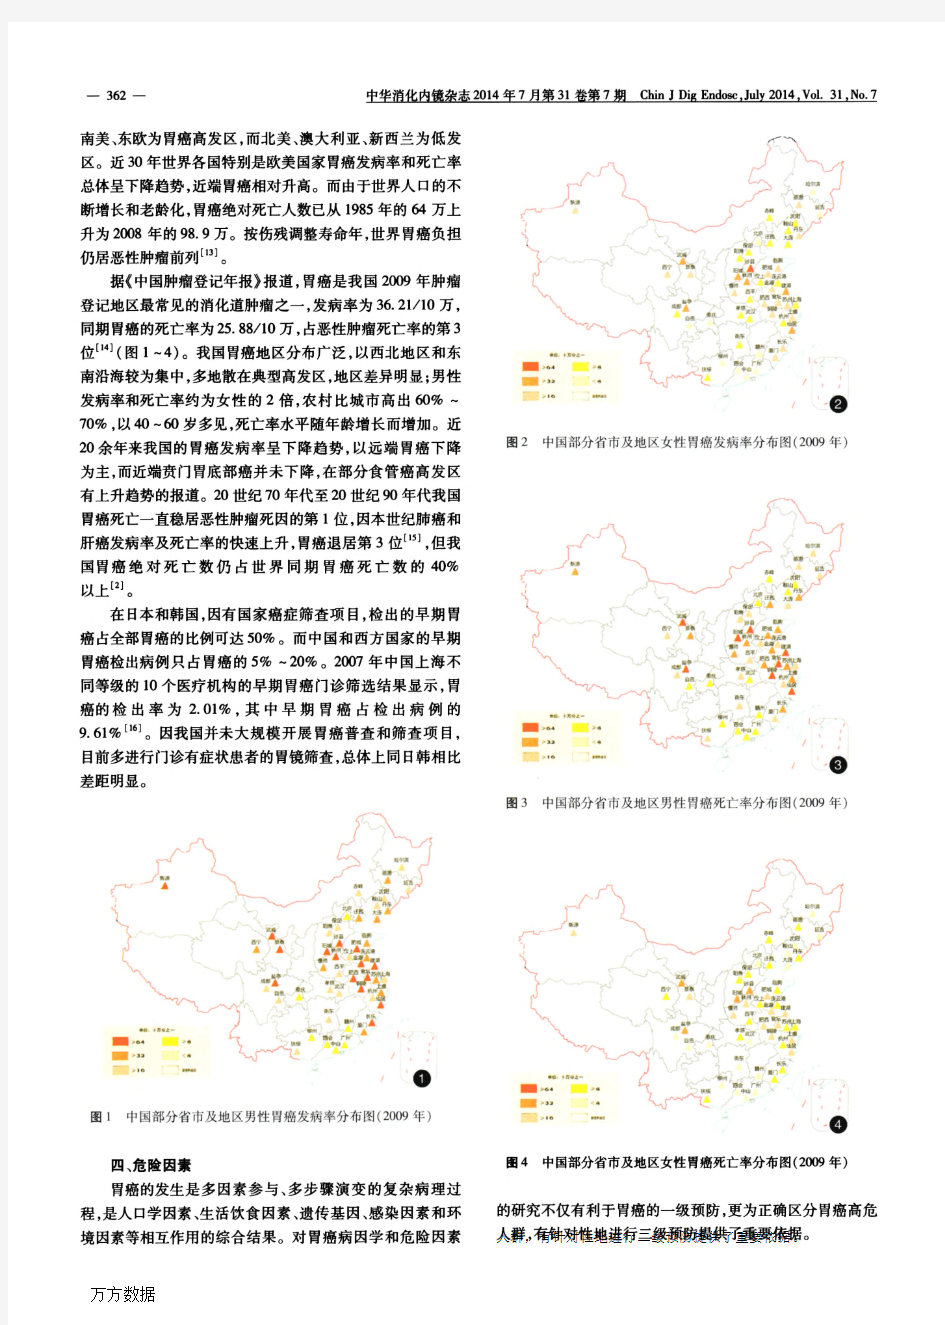 中国早期胃癌筛查及内镜诊治共识意见(2014年,长沙)